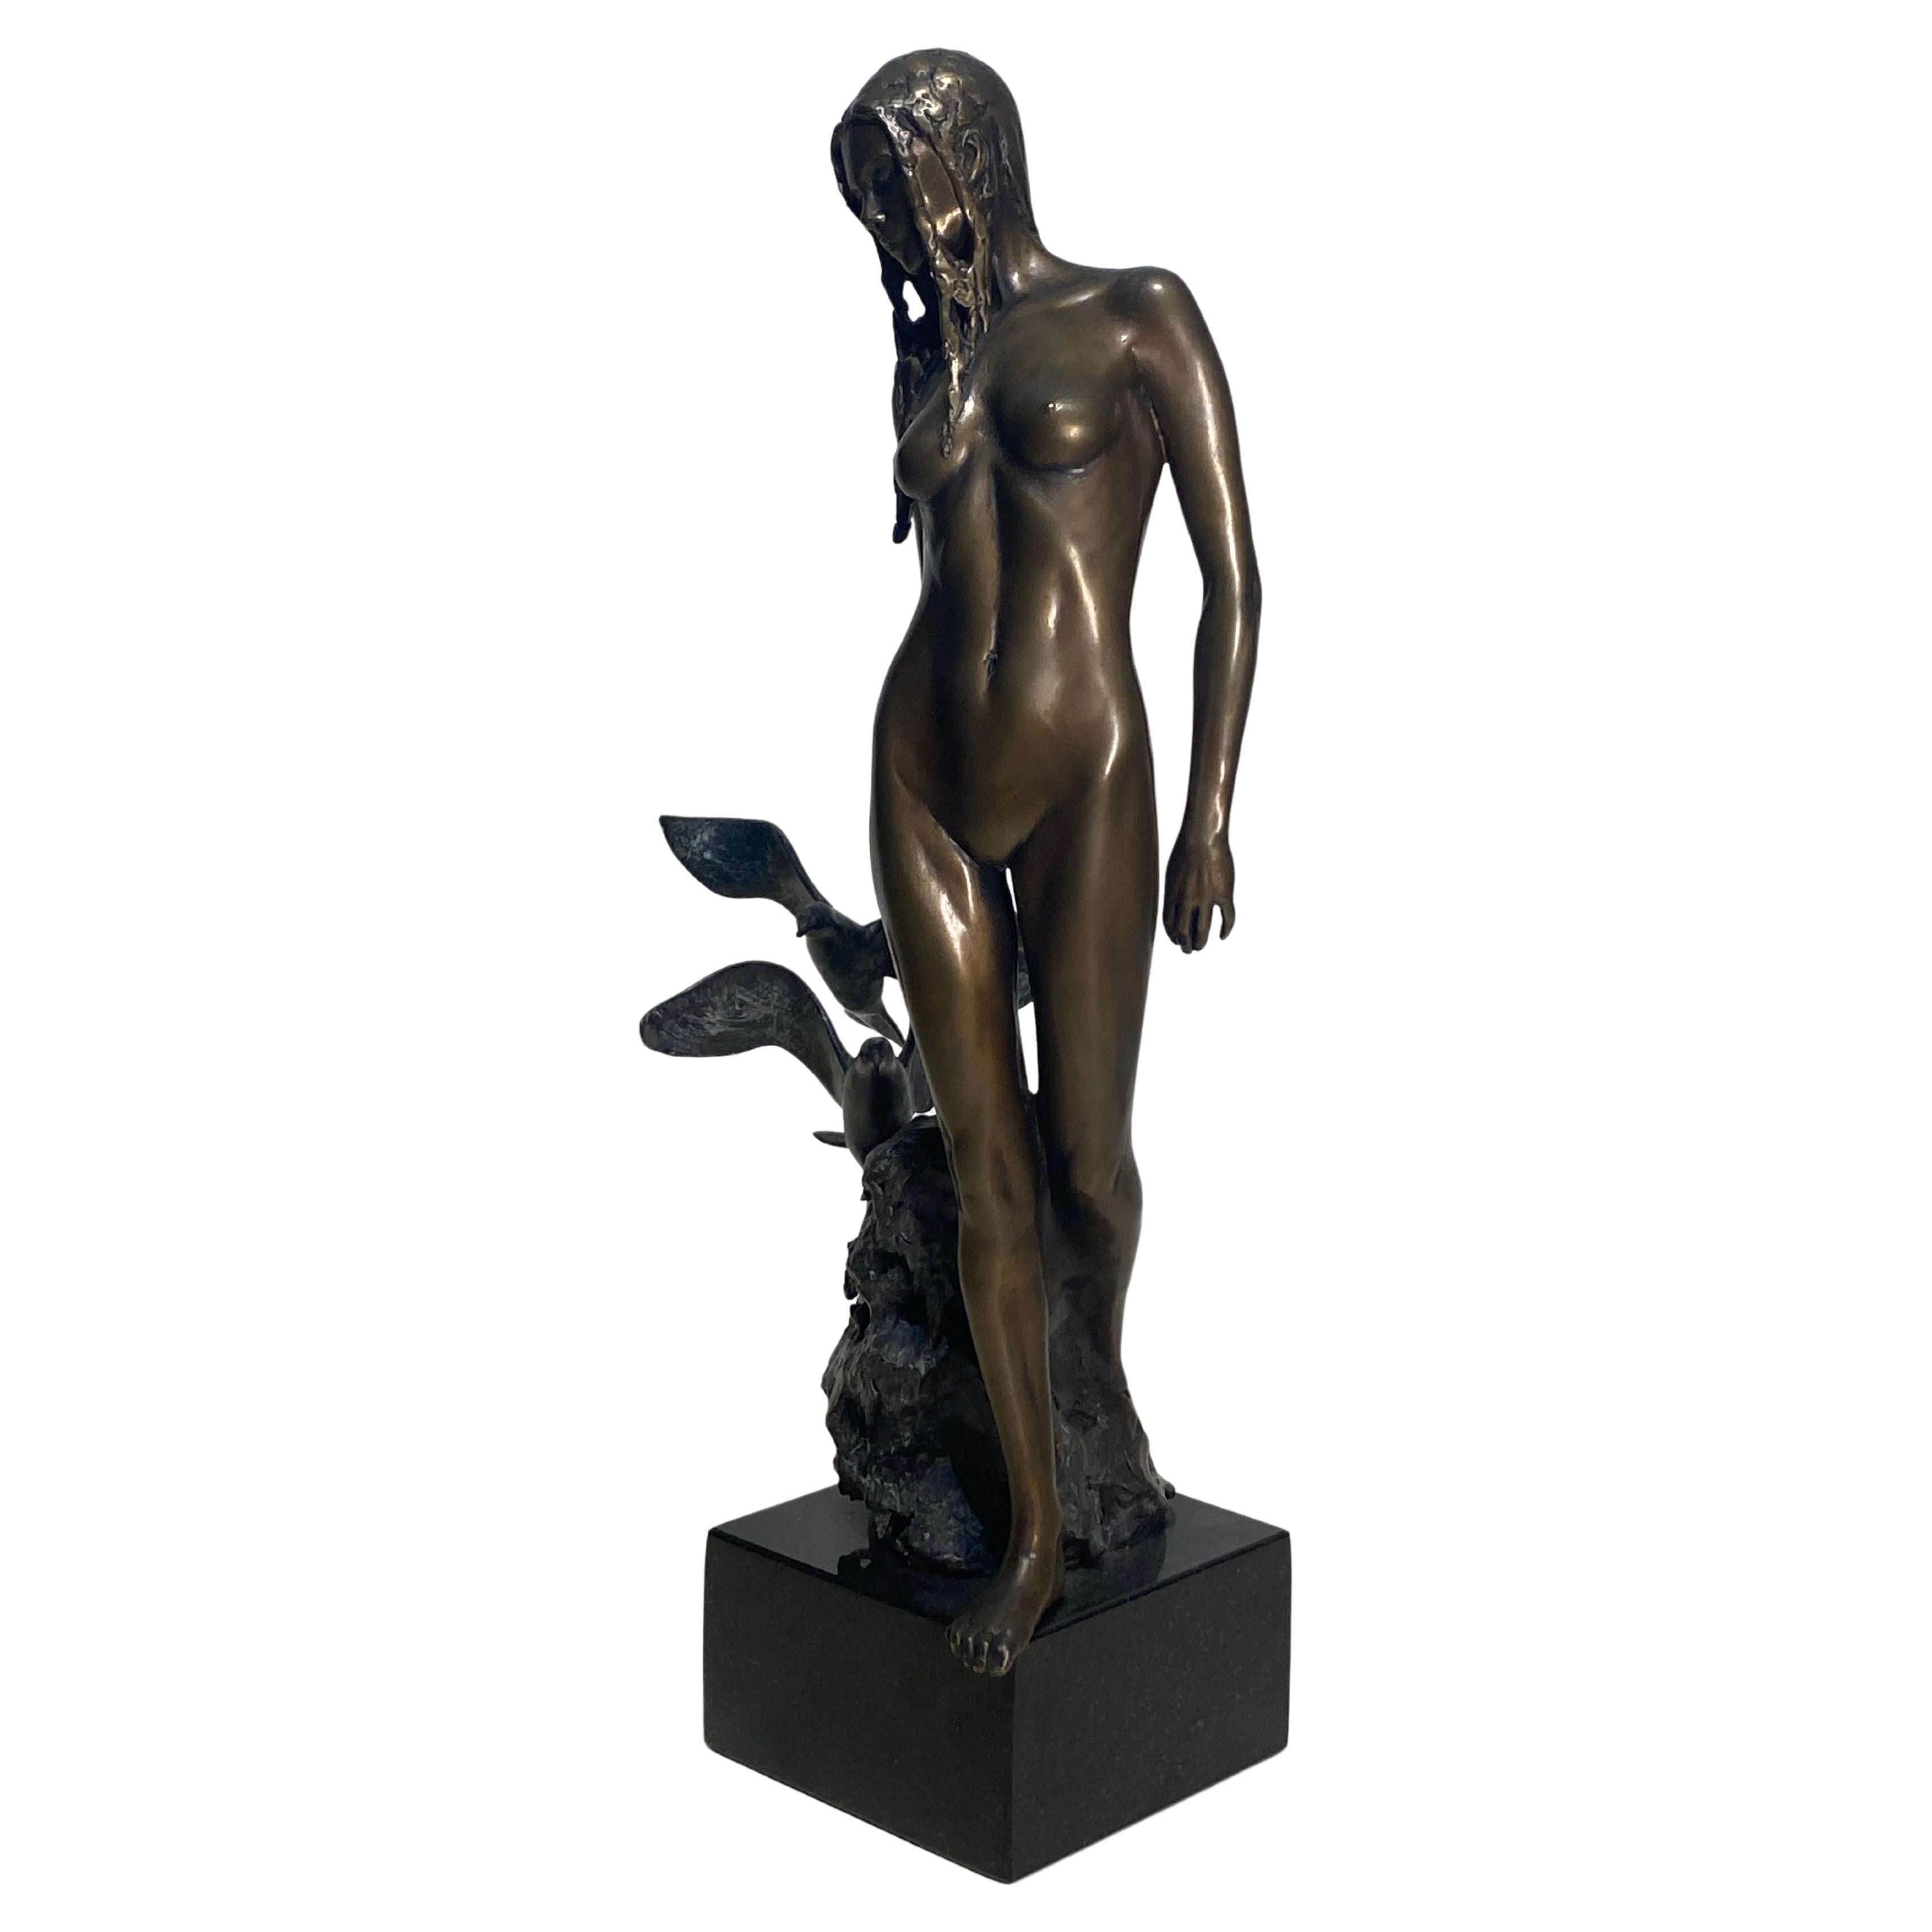 Neil Welch.  
A Large bronze sculpture Titled 